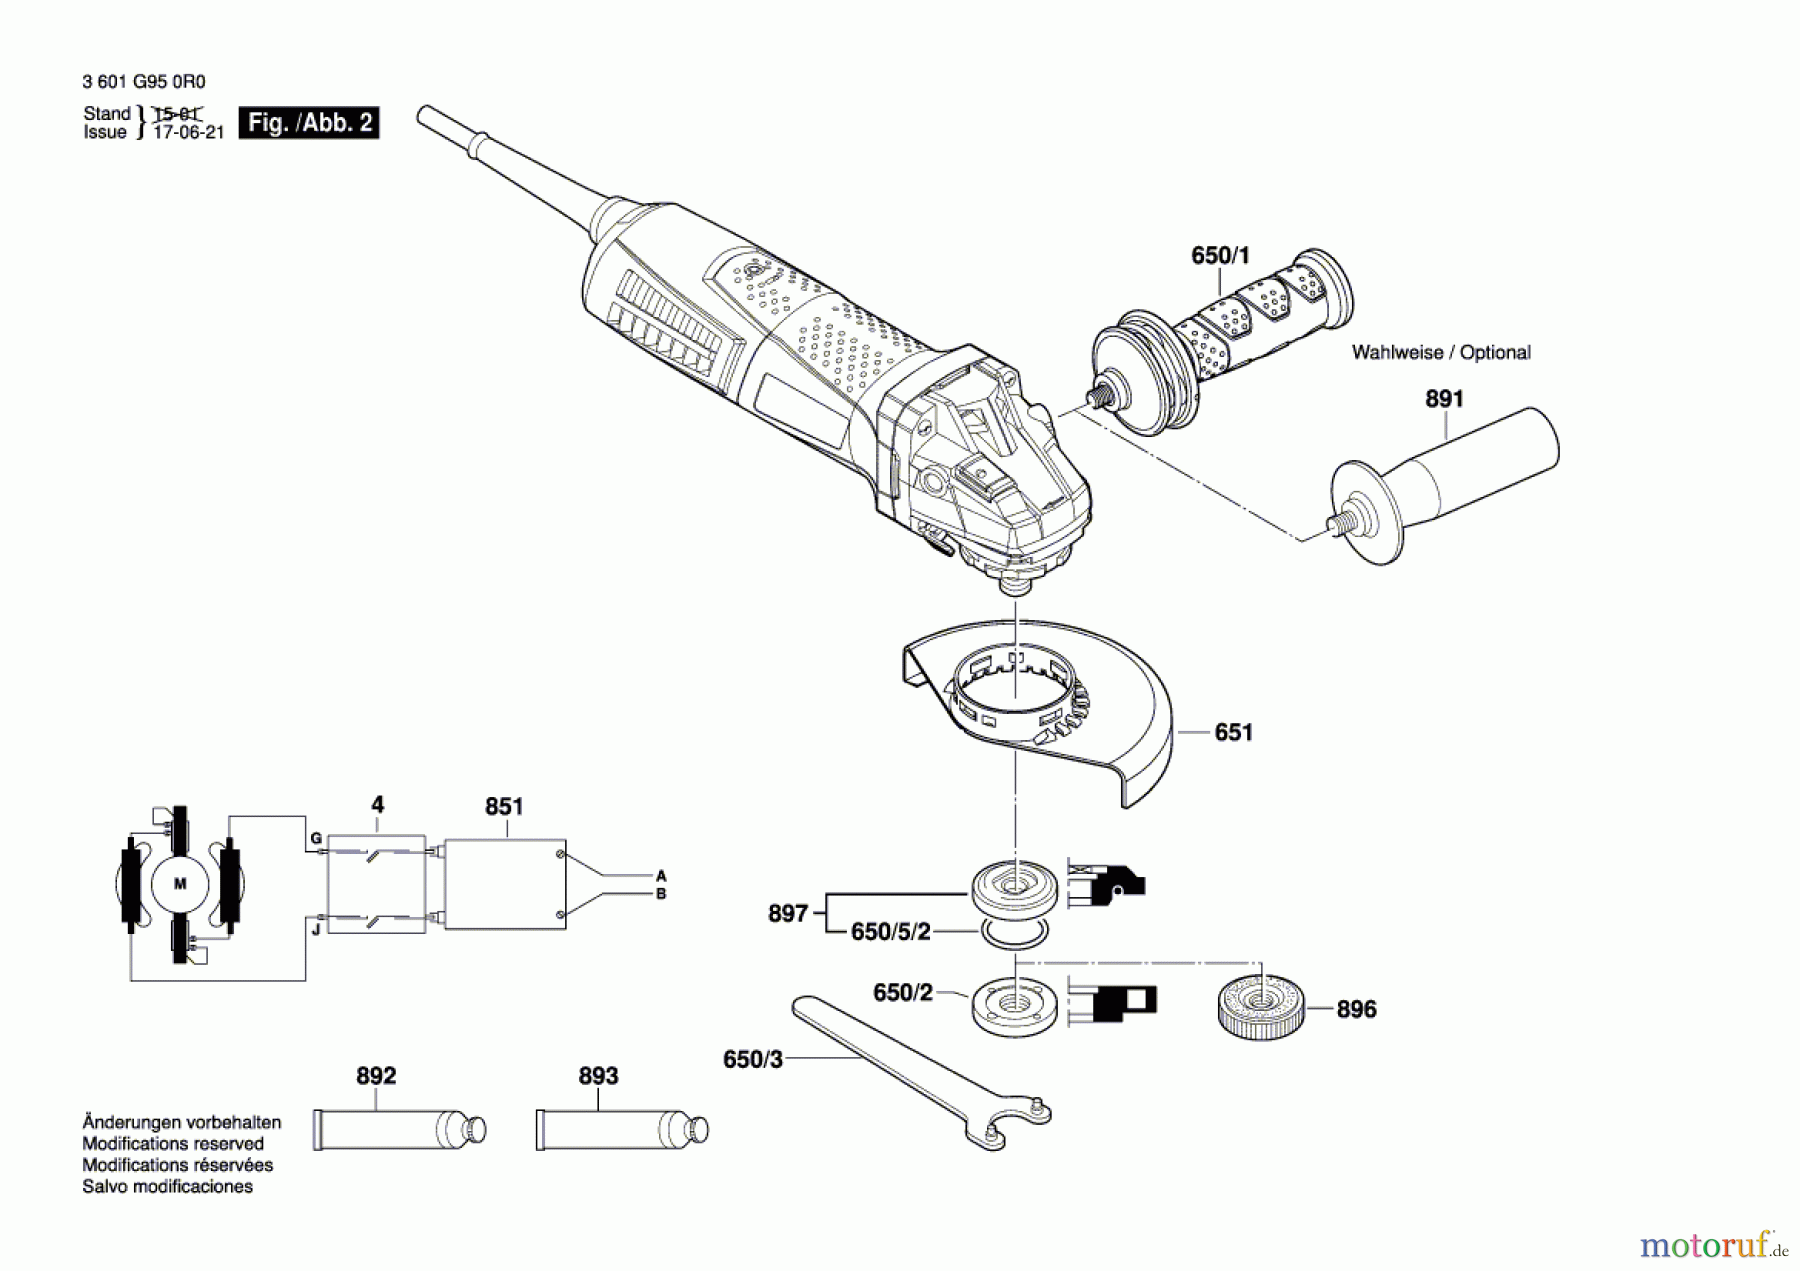  Bosch Werkzeug Winkelschleifer GWS 17-125 CI Seite 2